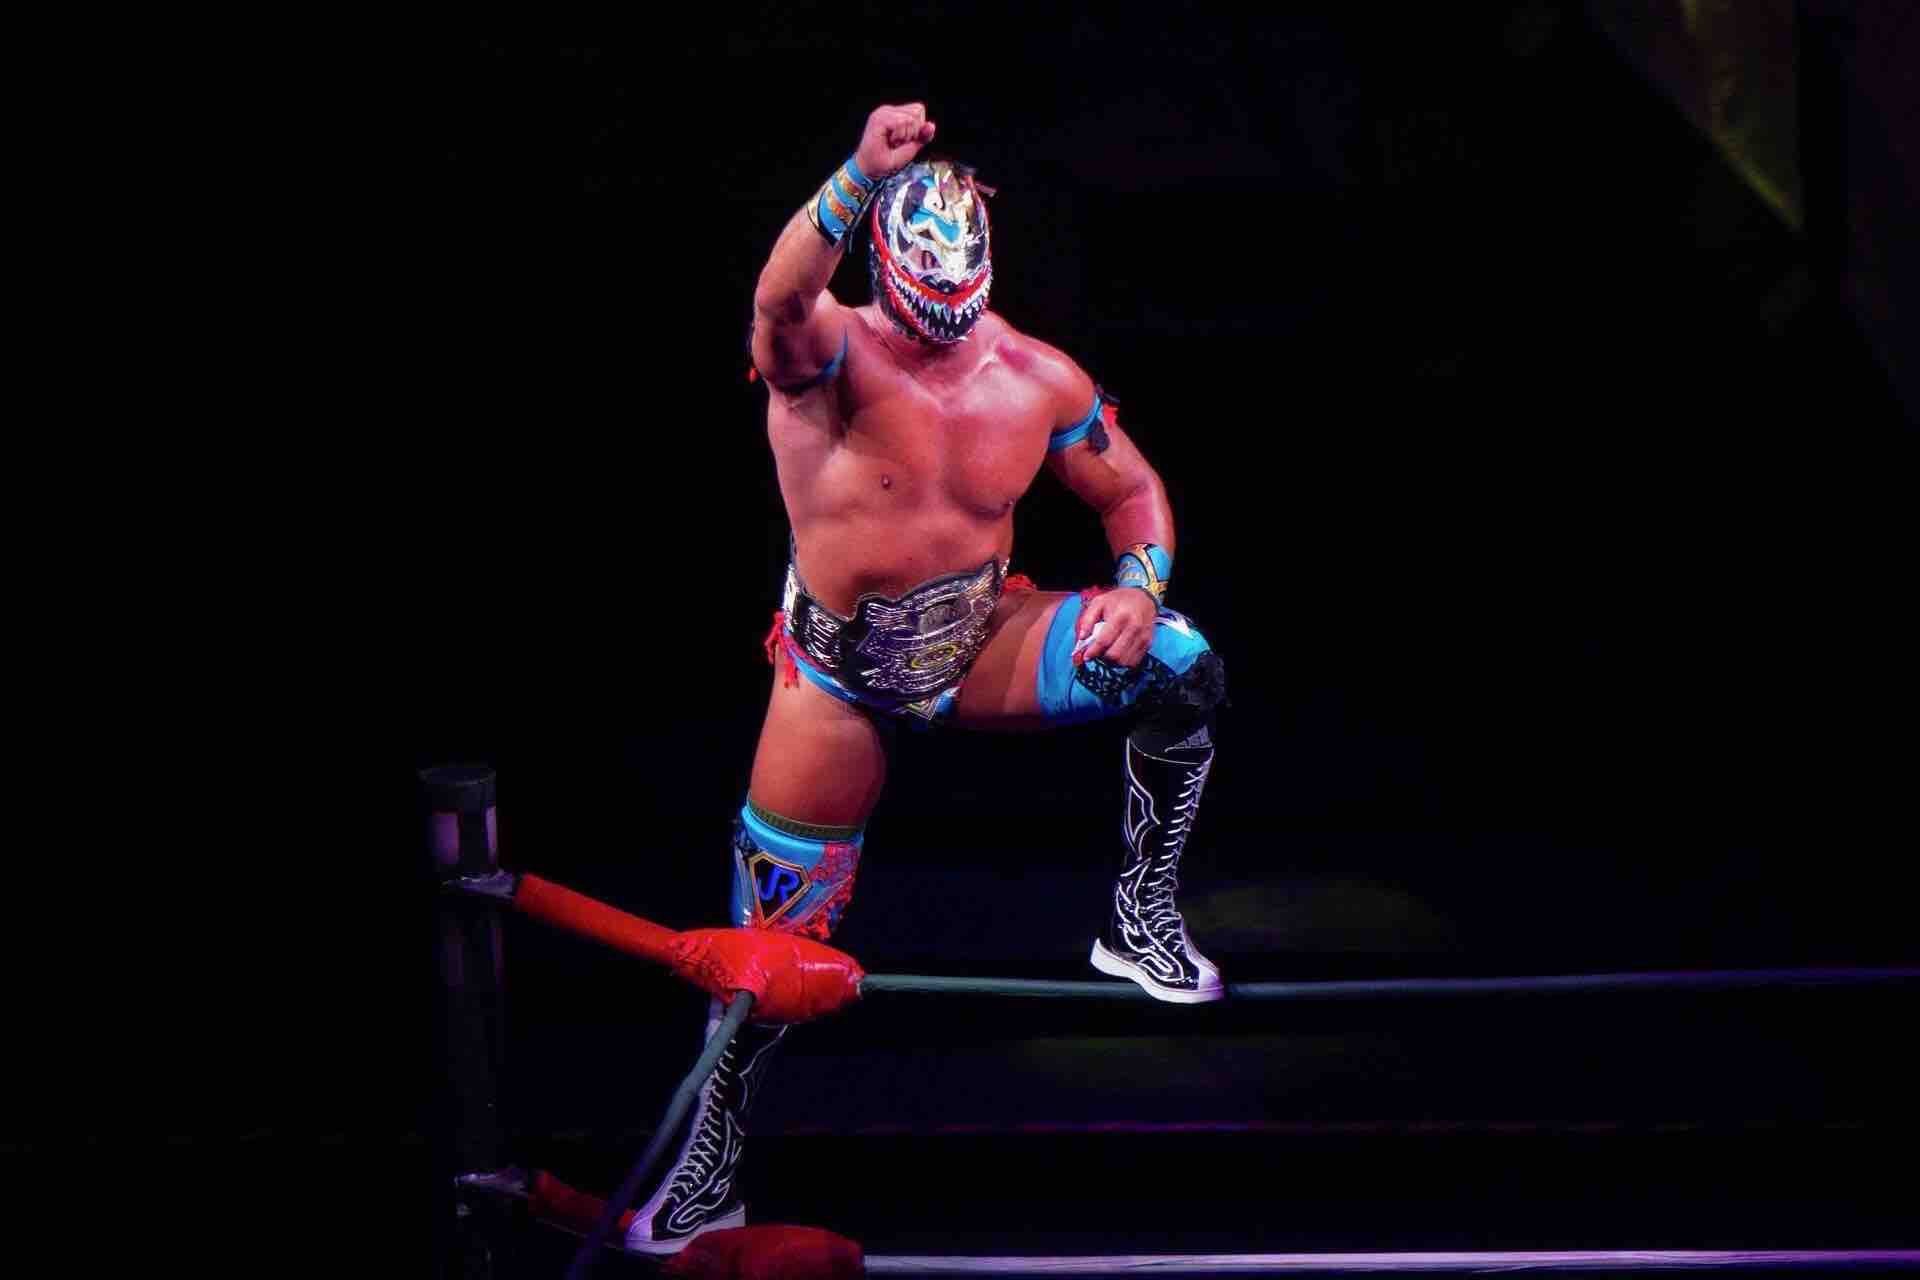 Lucha Libre Mexico City wrestler on ring